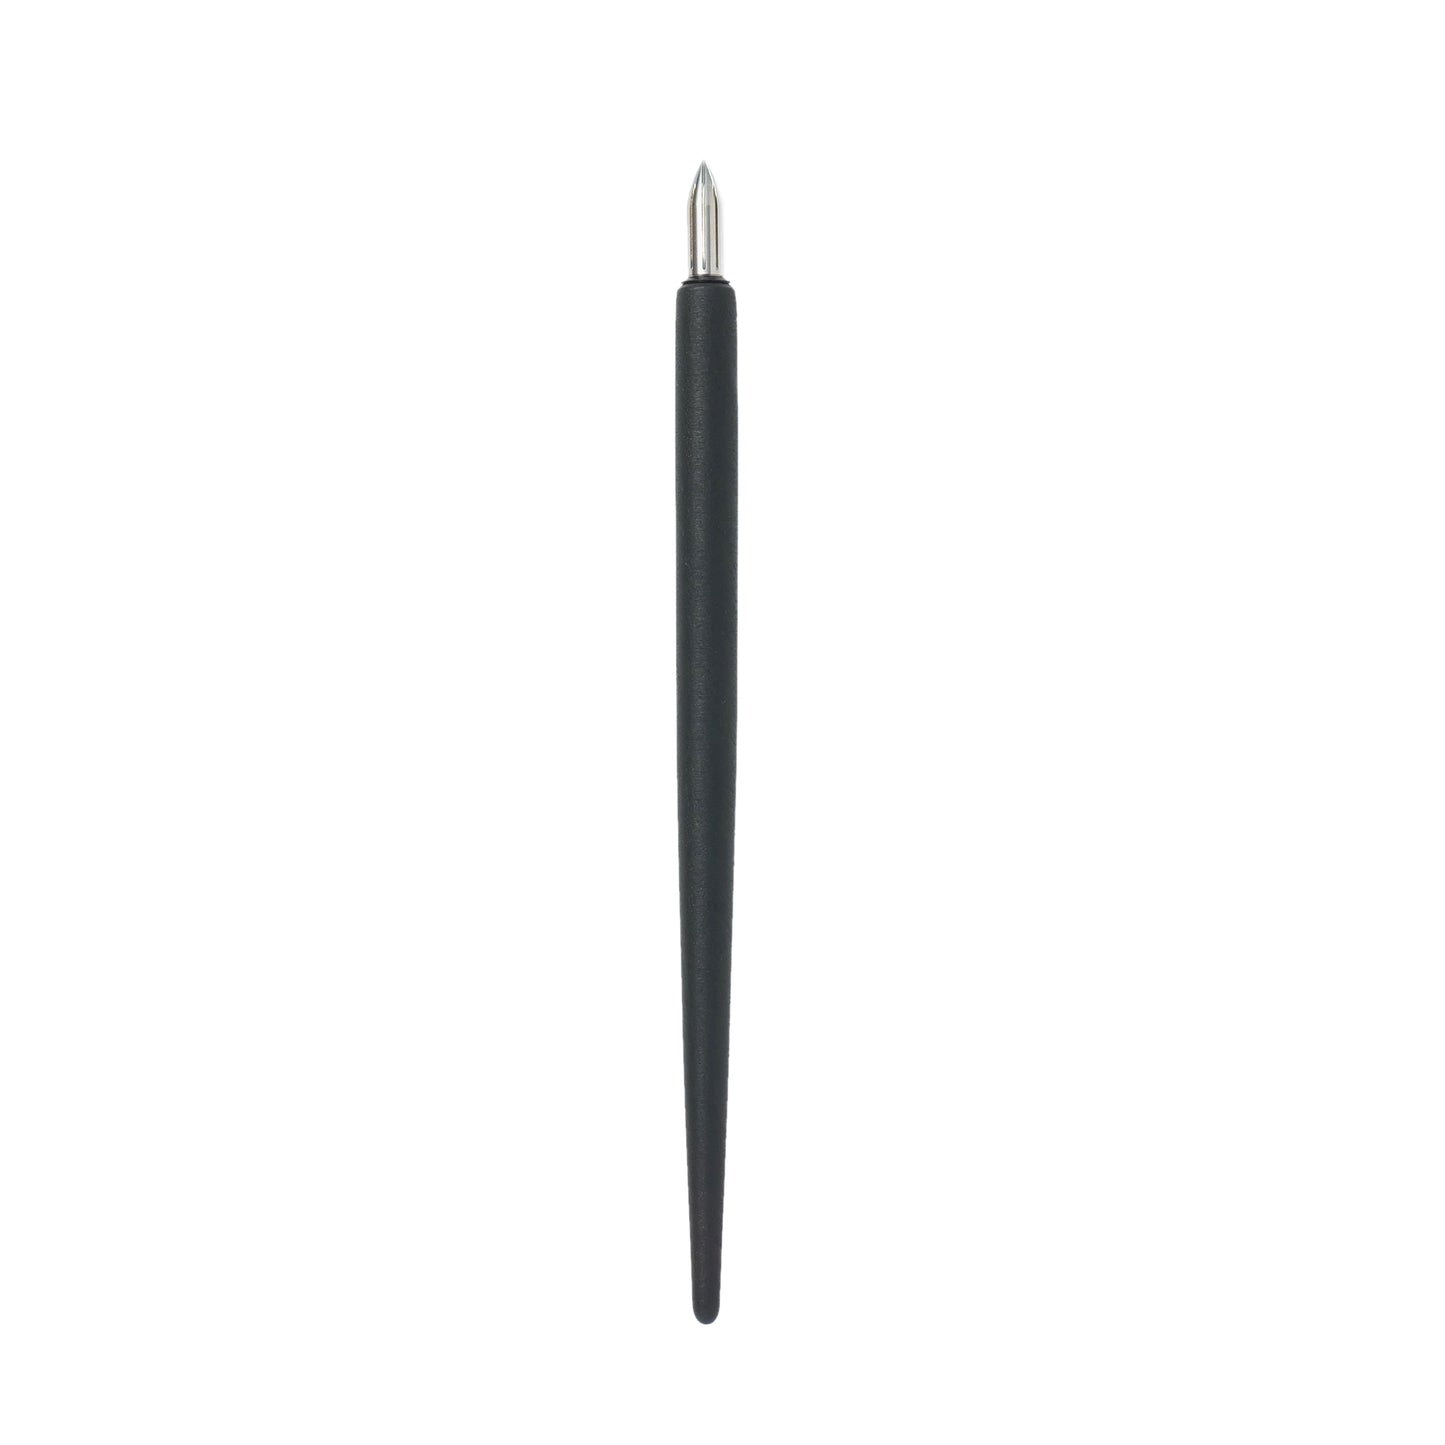 Kakimori Urushi Dip Pen Holder Nib Holder Made in Japan With Steel Metal Kakimori nib